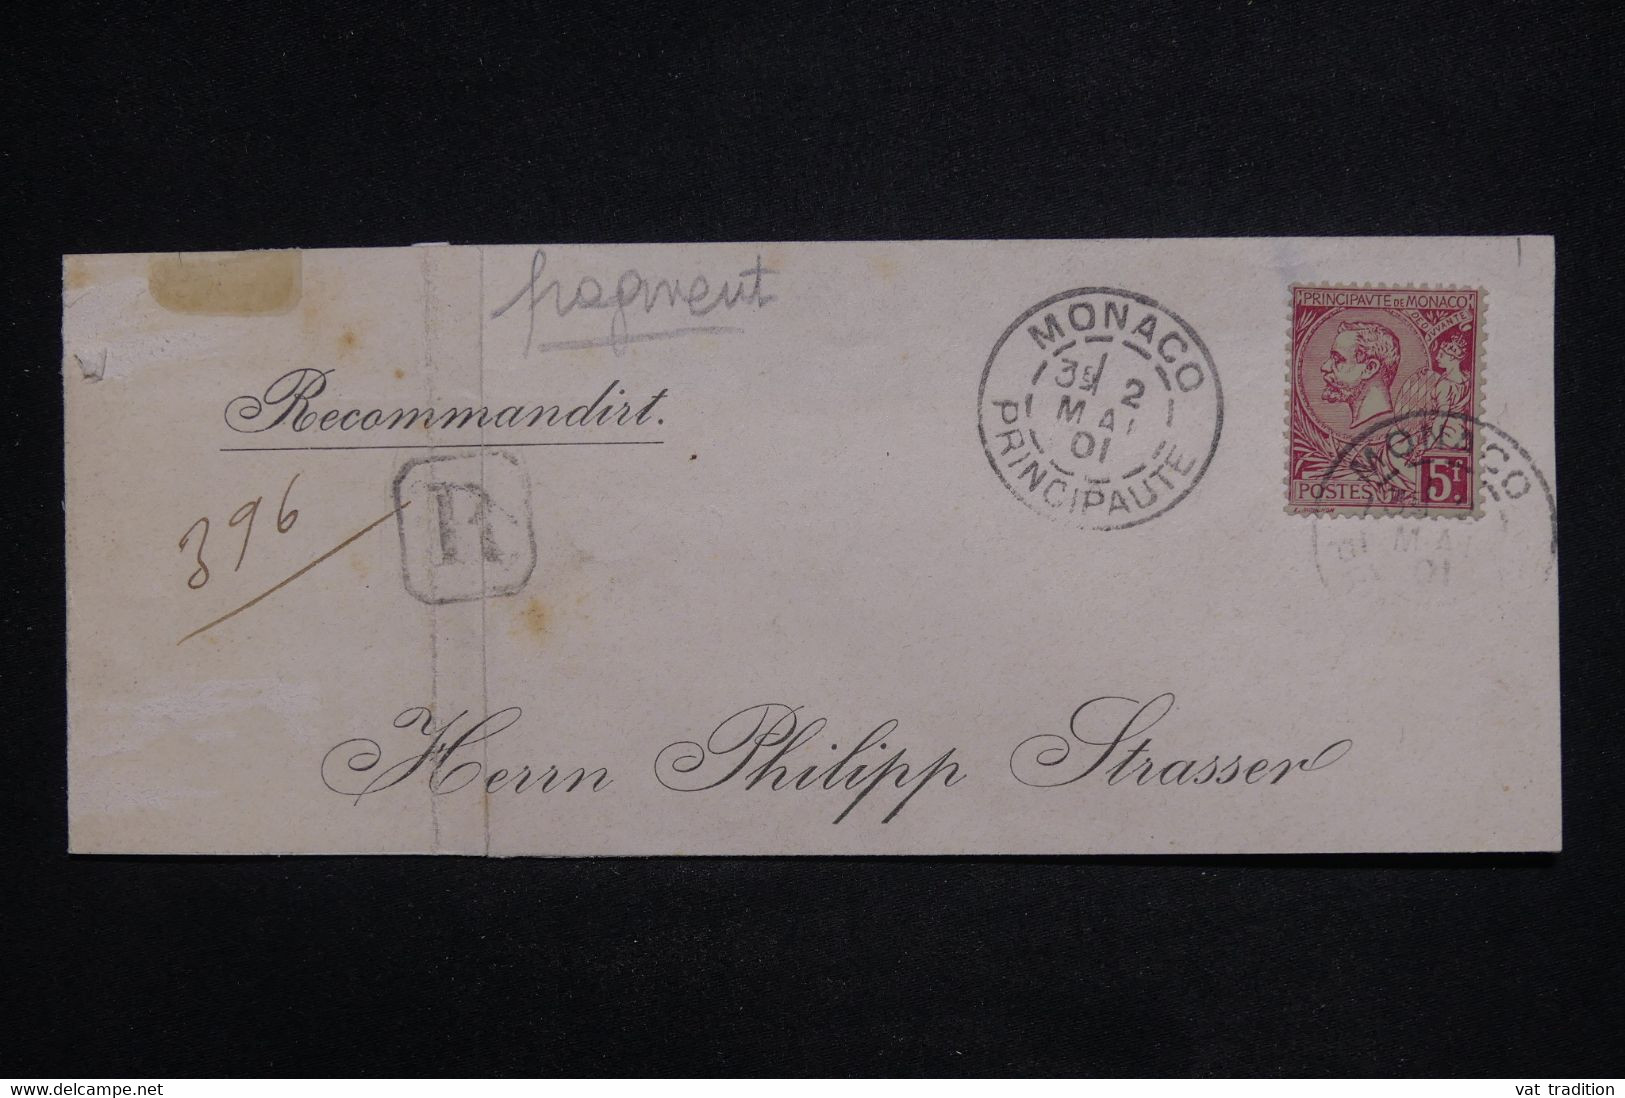 MONACO - Fragment D'enveloppe En Recommandé Pour L 'Allemagne En 1901 - L 126600 - Covers & Documents